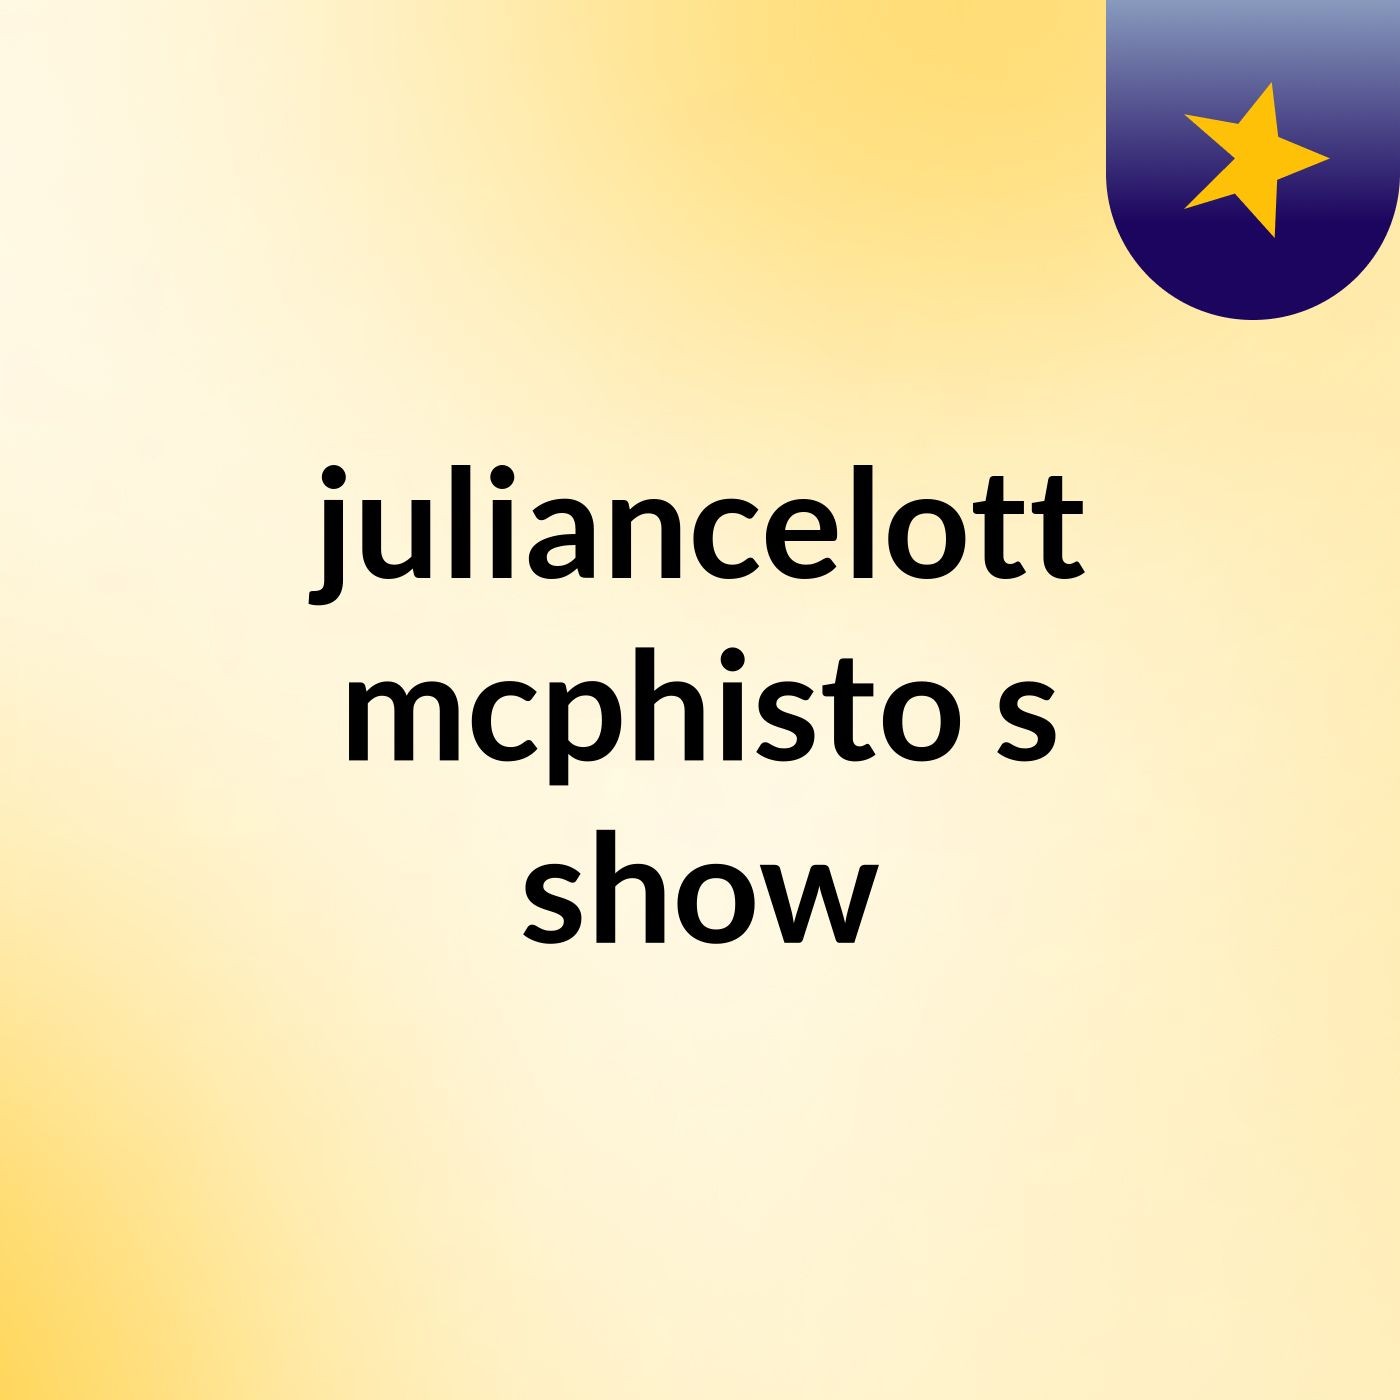 juliancelott mcphisto's show